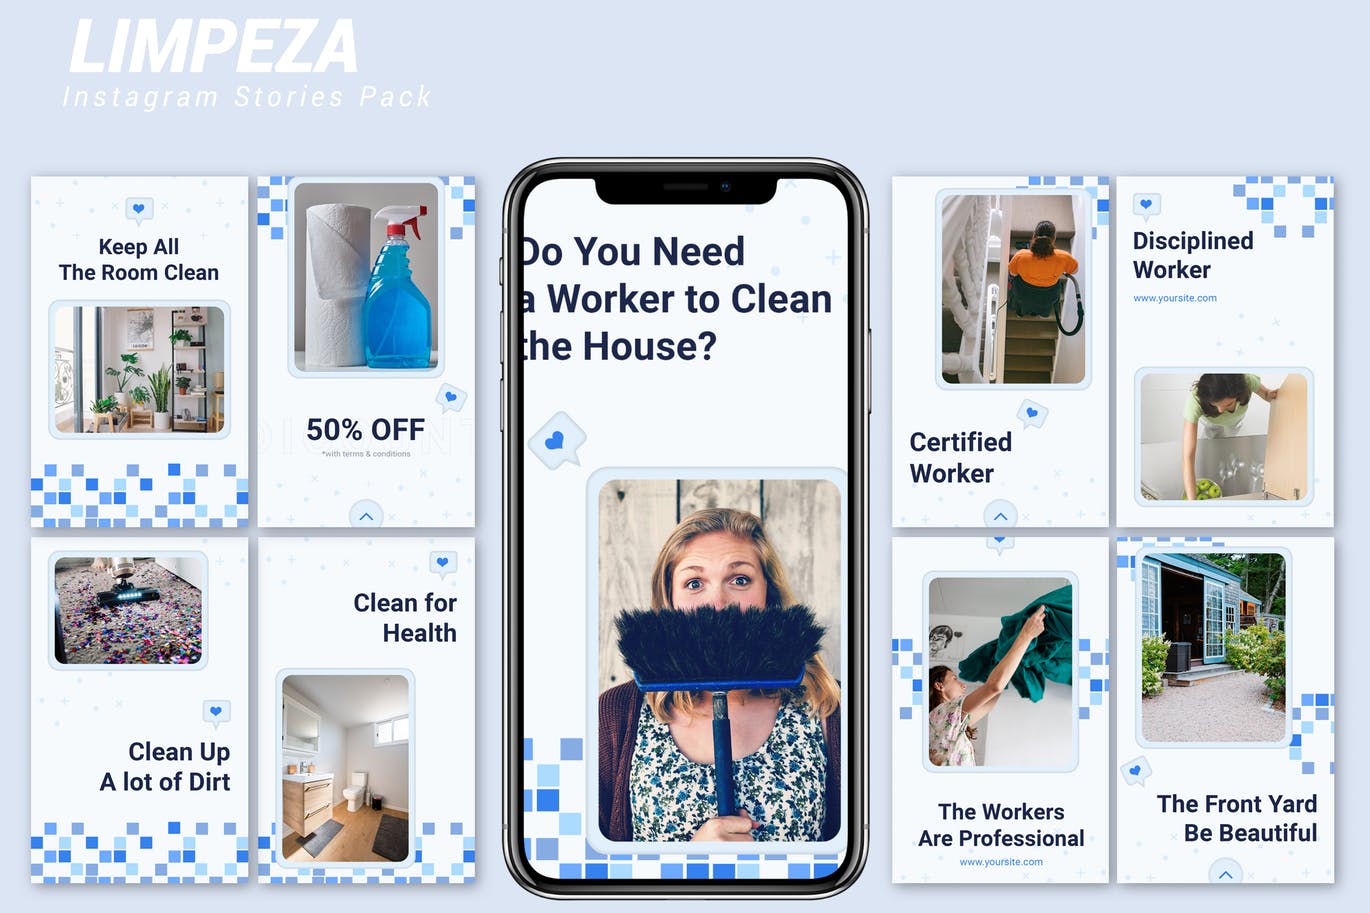 蓝色方块点缀设计风格Instagram品牌故事模板第一素材精选 Limpeza – Instagram Story Pack插图